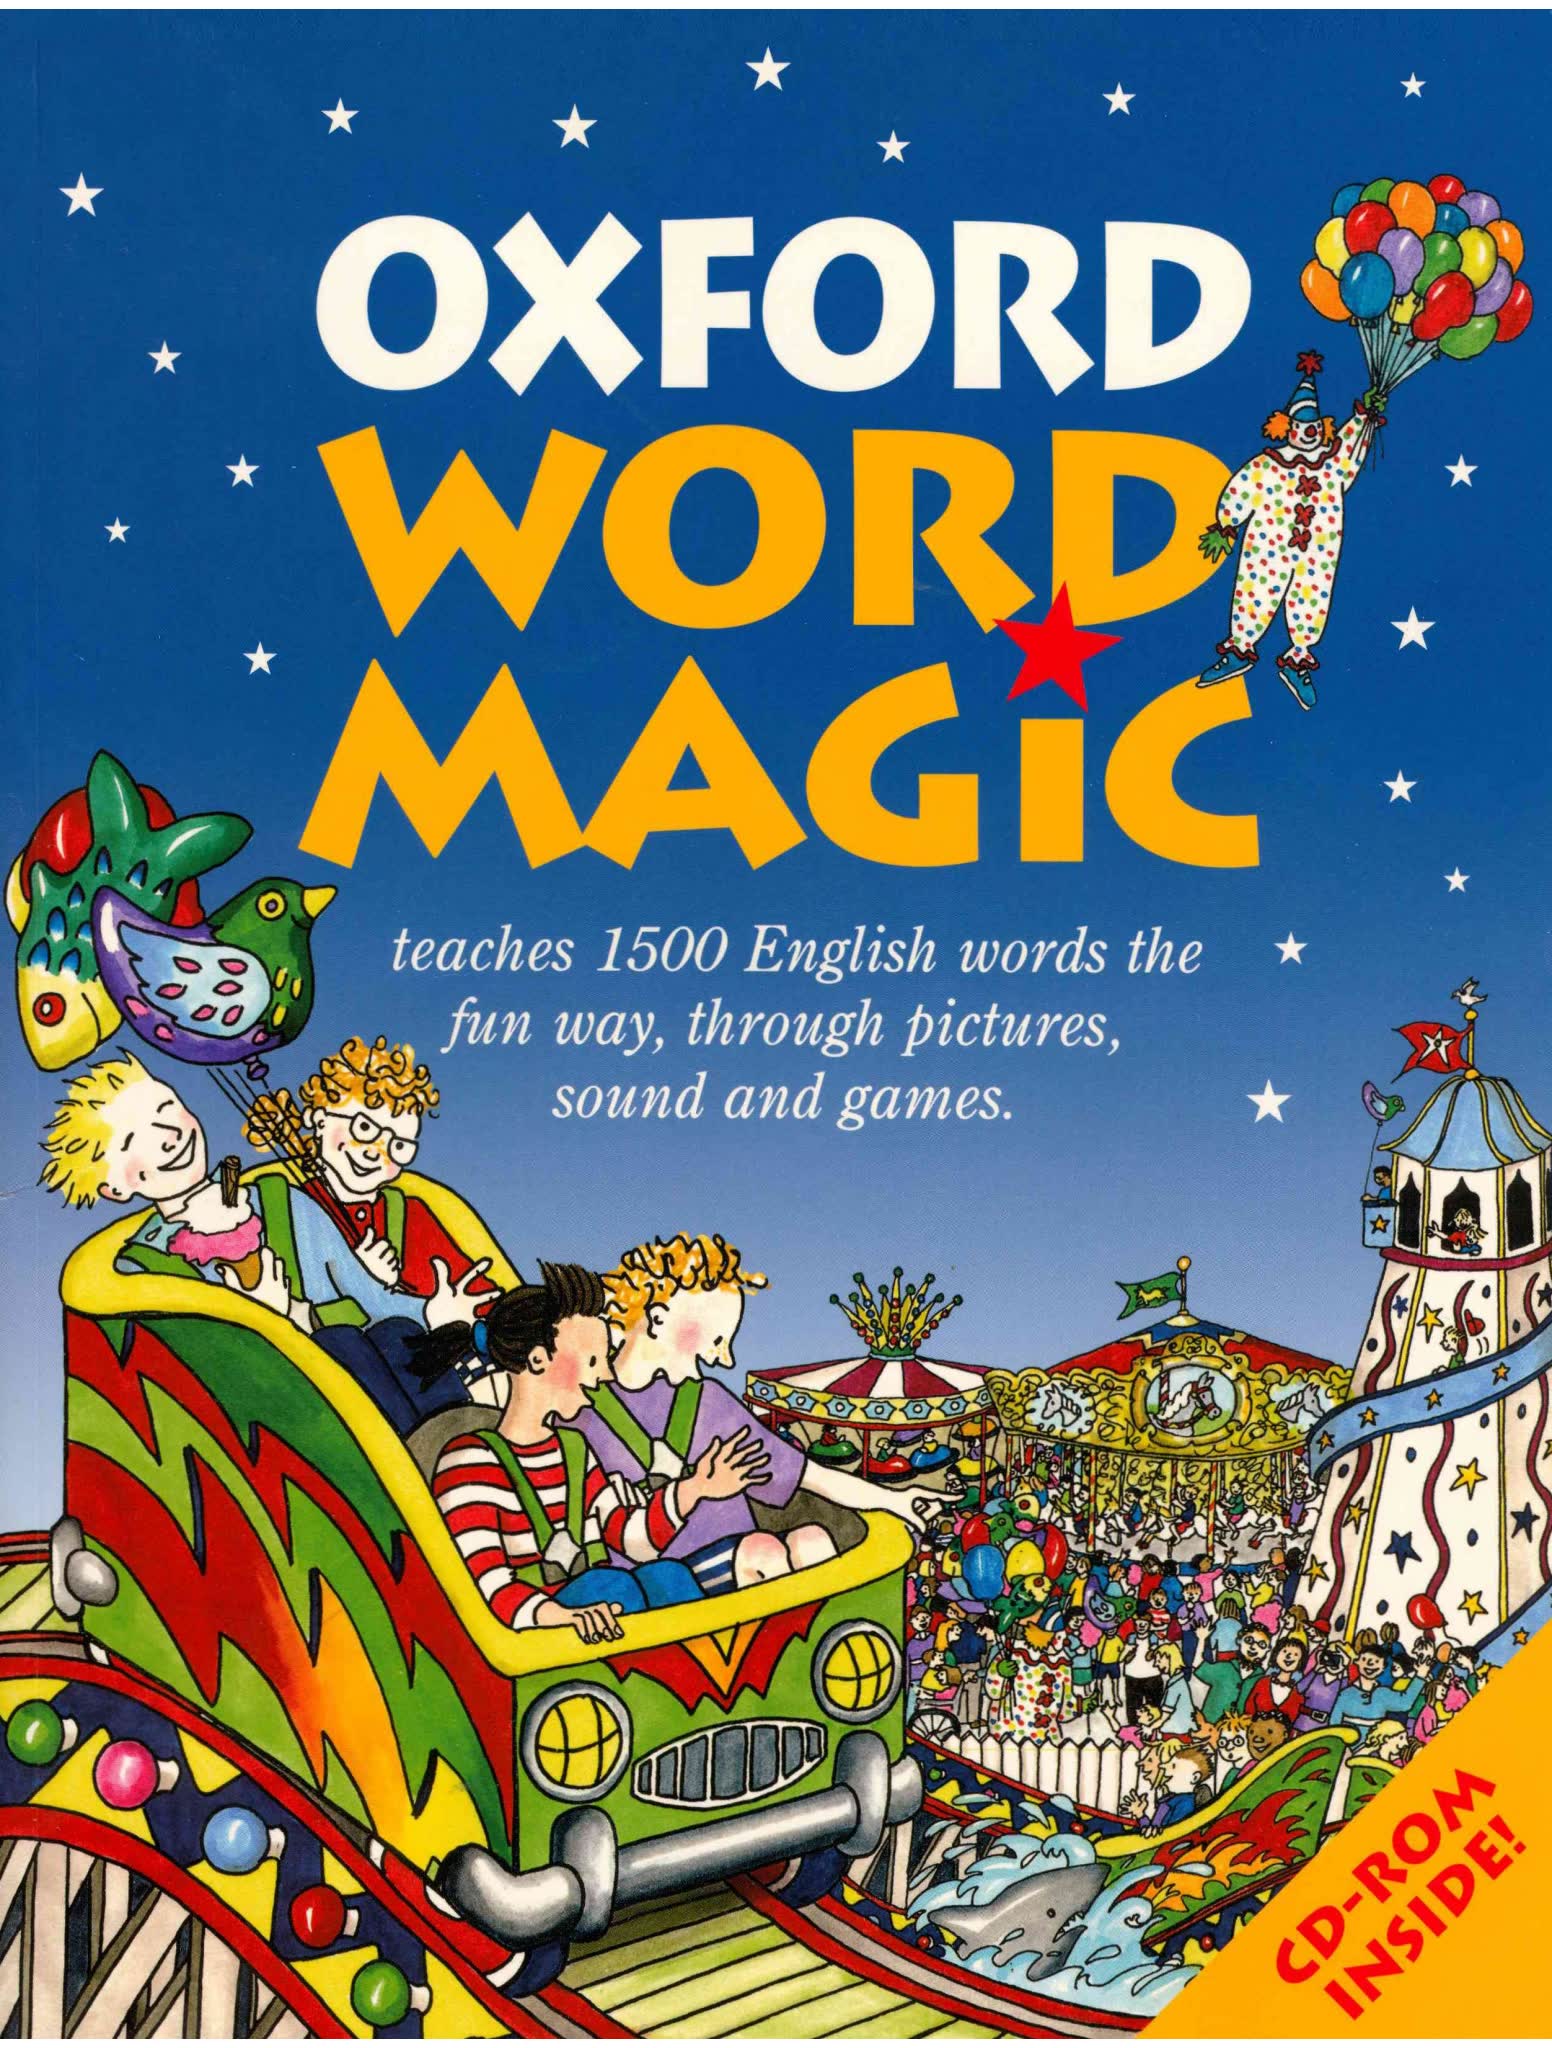 Oxford_Word_Magic